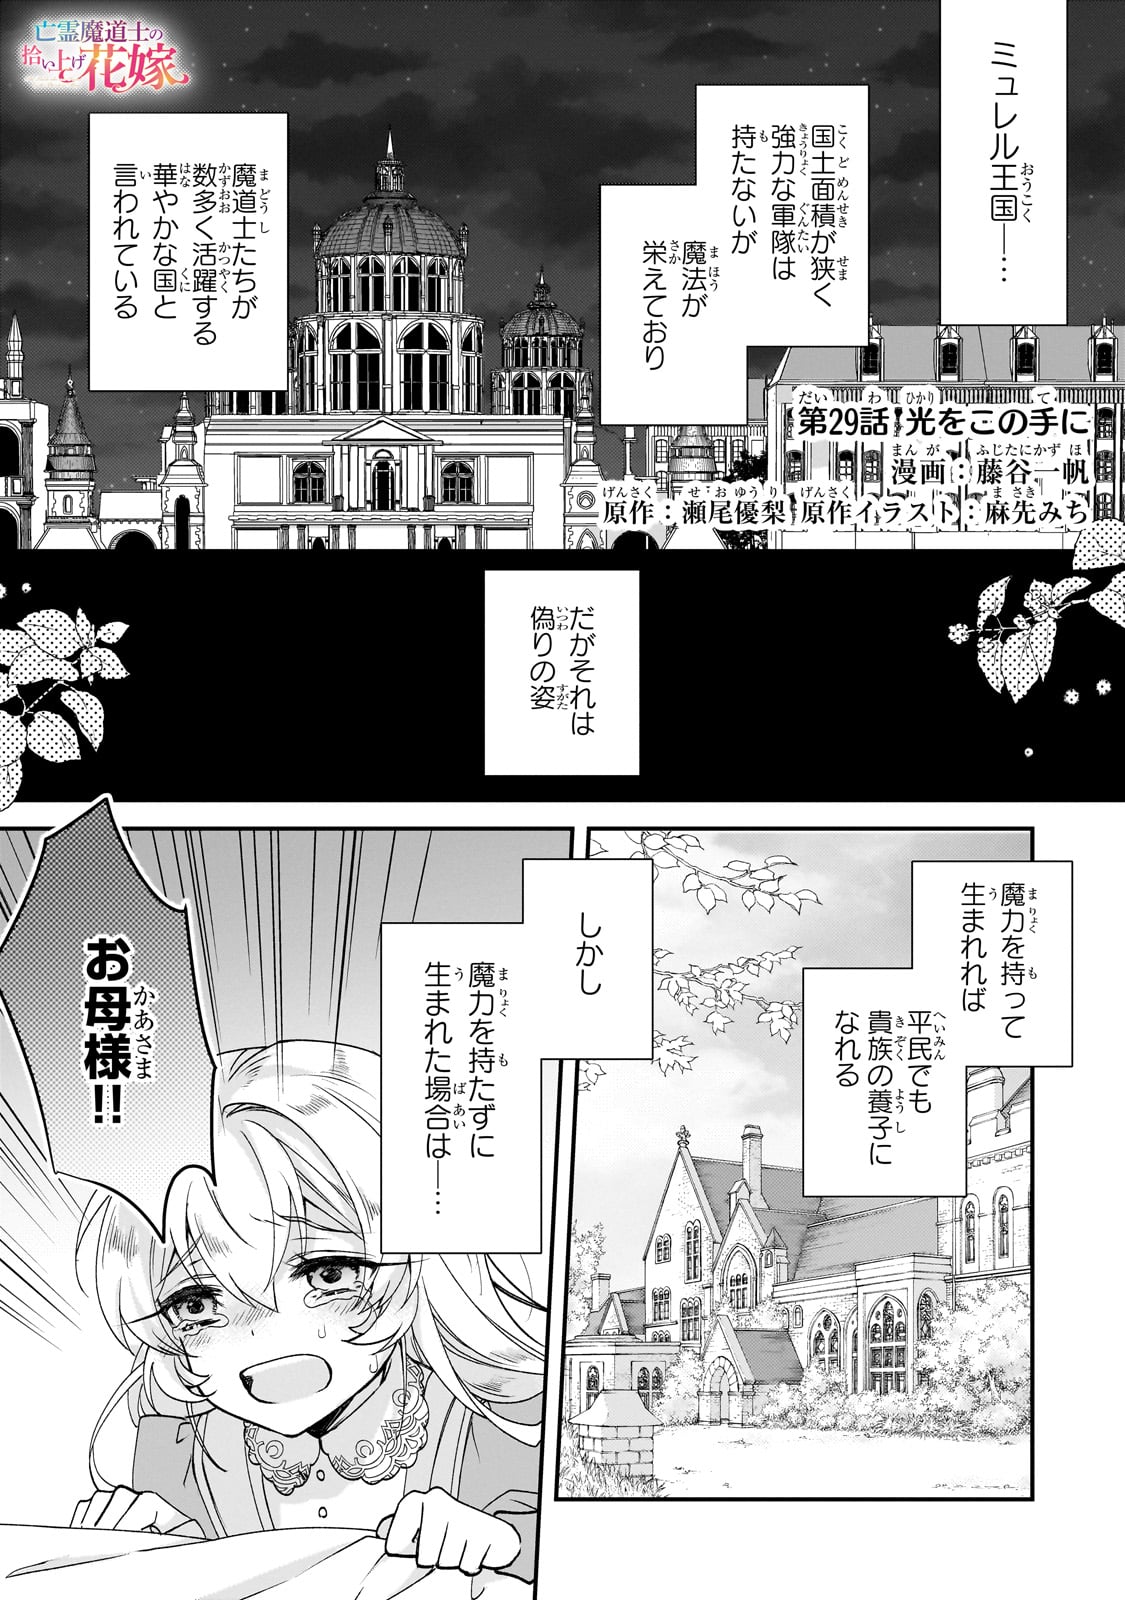 Bourei Madoushi no Hiroiage Hanayome - Chapter 29 - Page 1